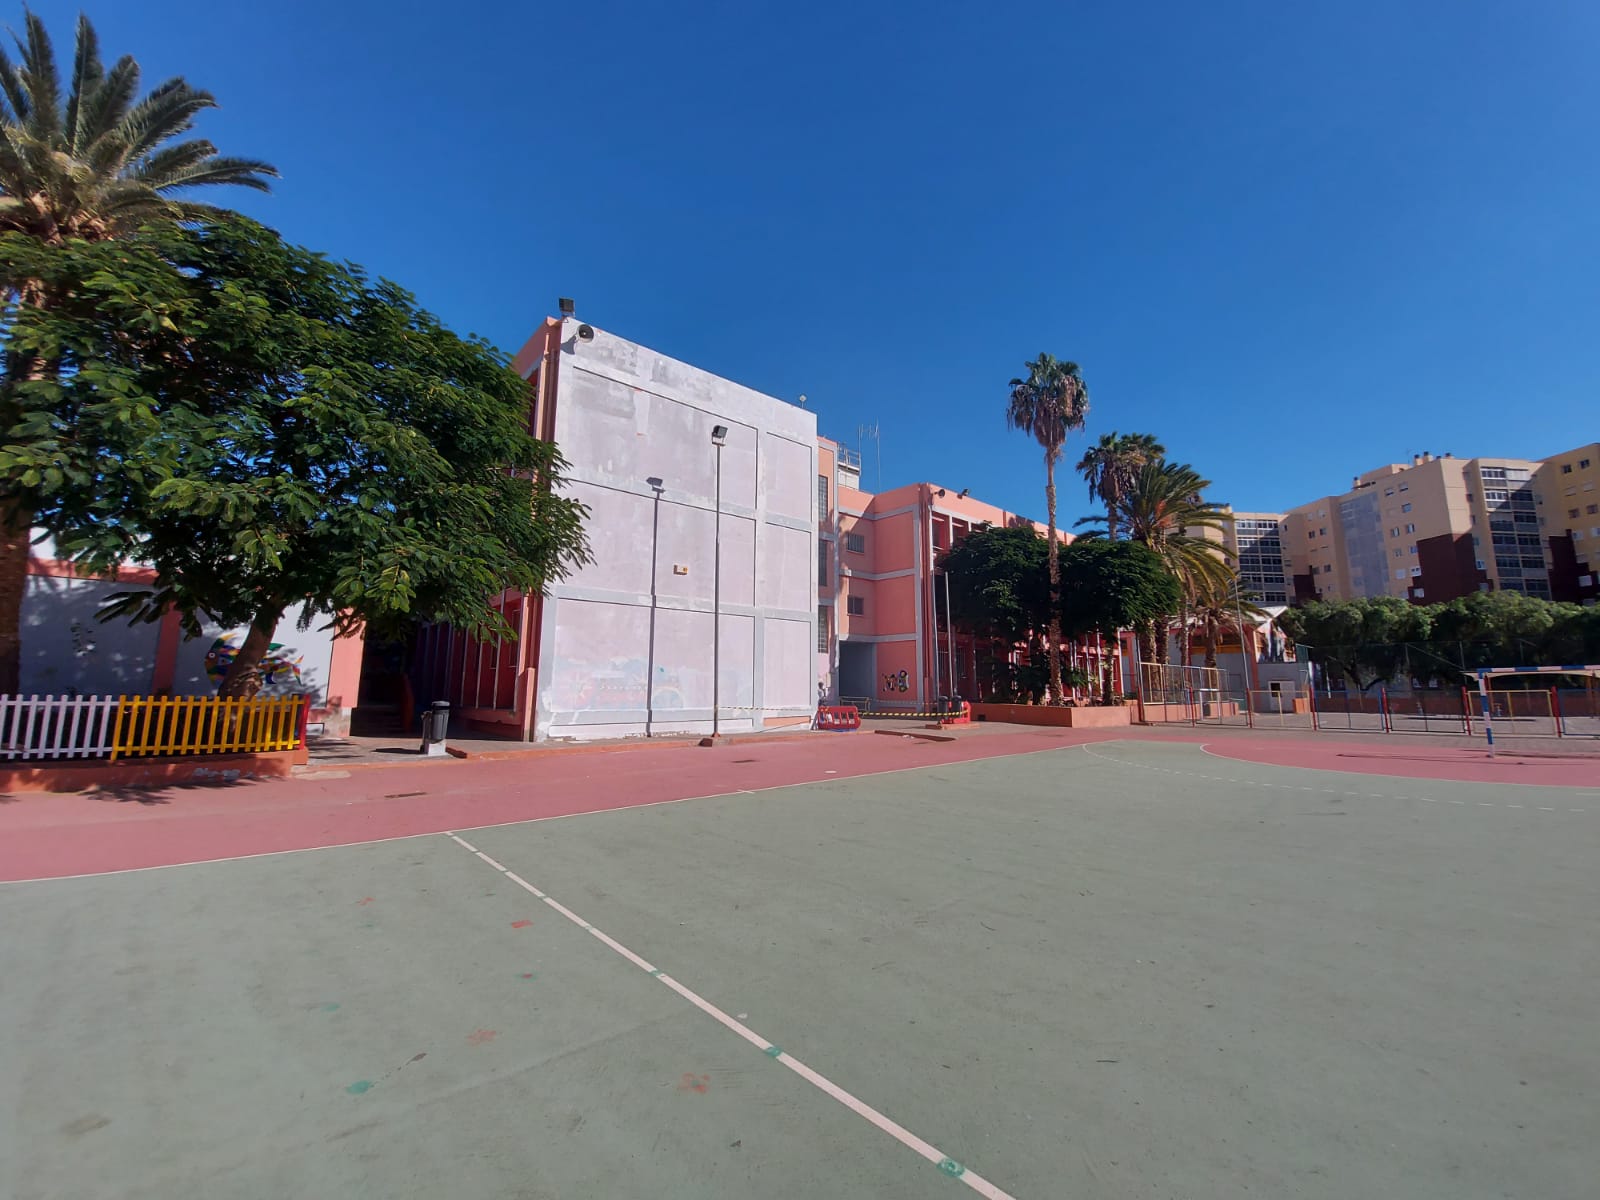 Renovación del colegio Poeta Pedro Lezcano en Telde / CanariasNoticias.es